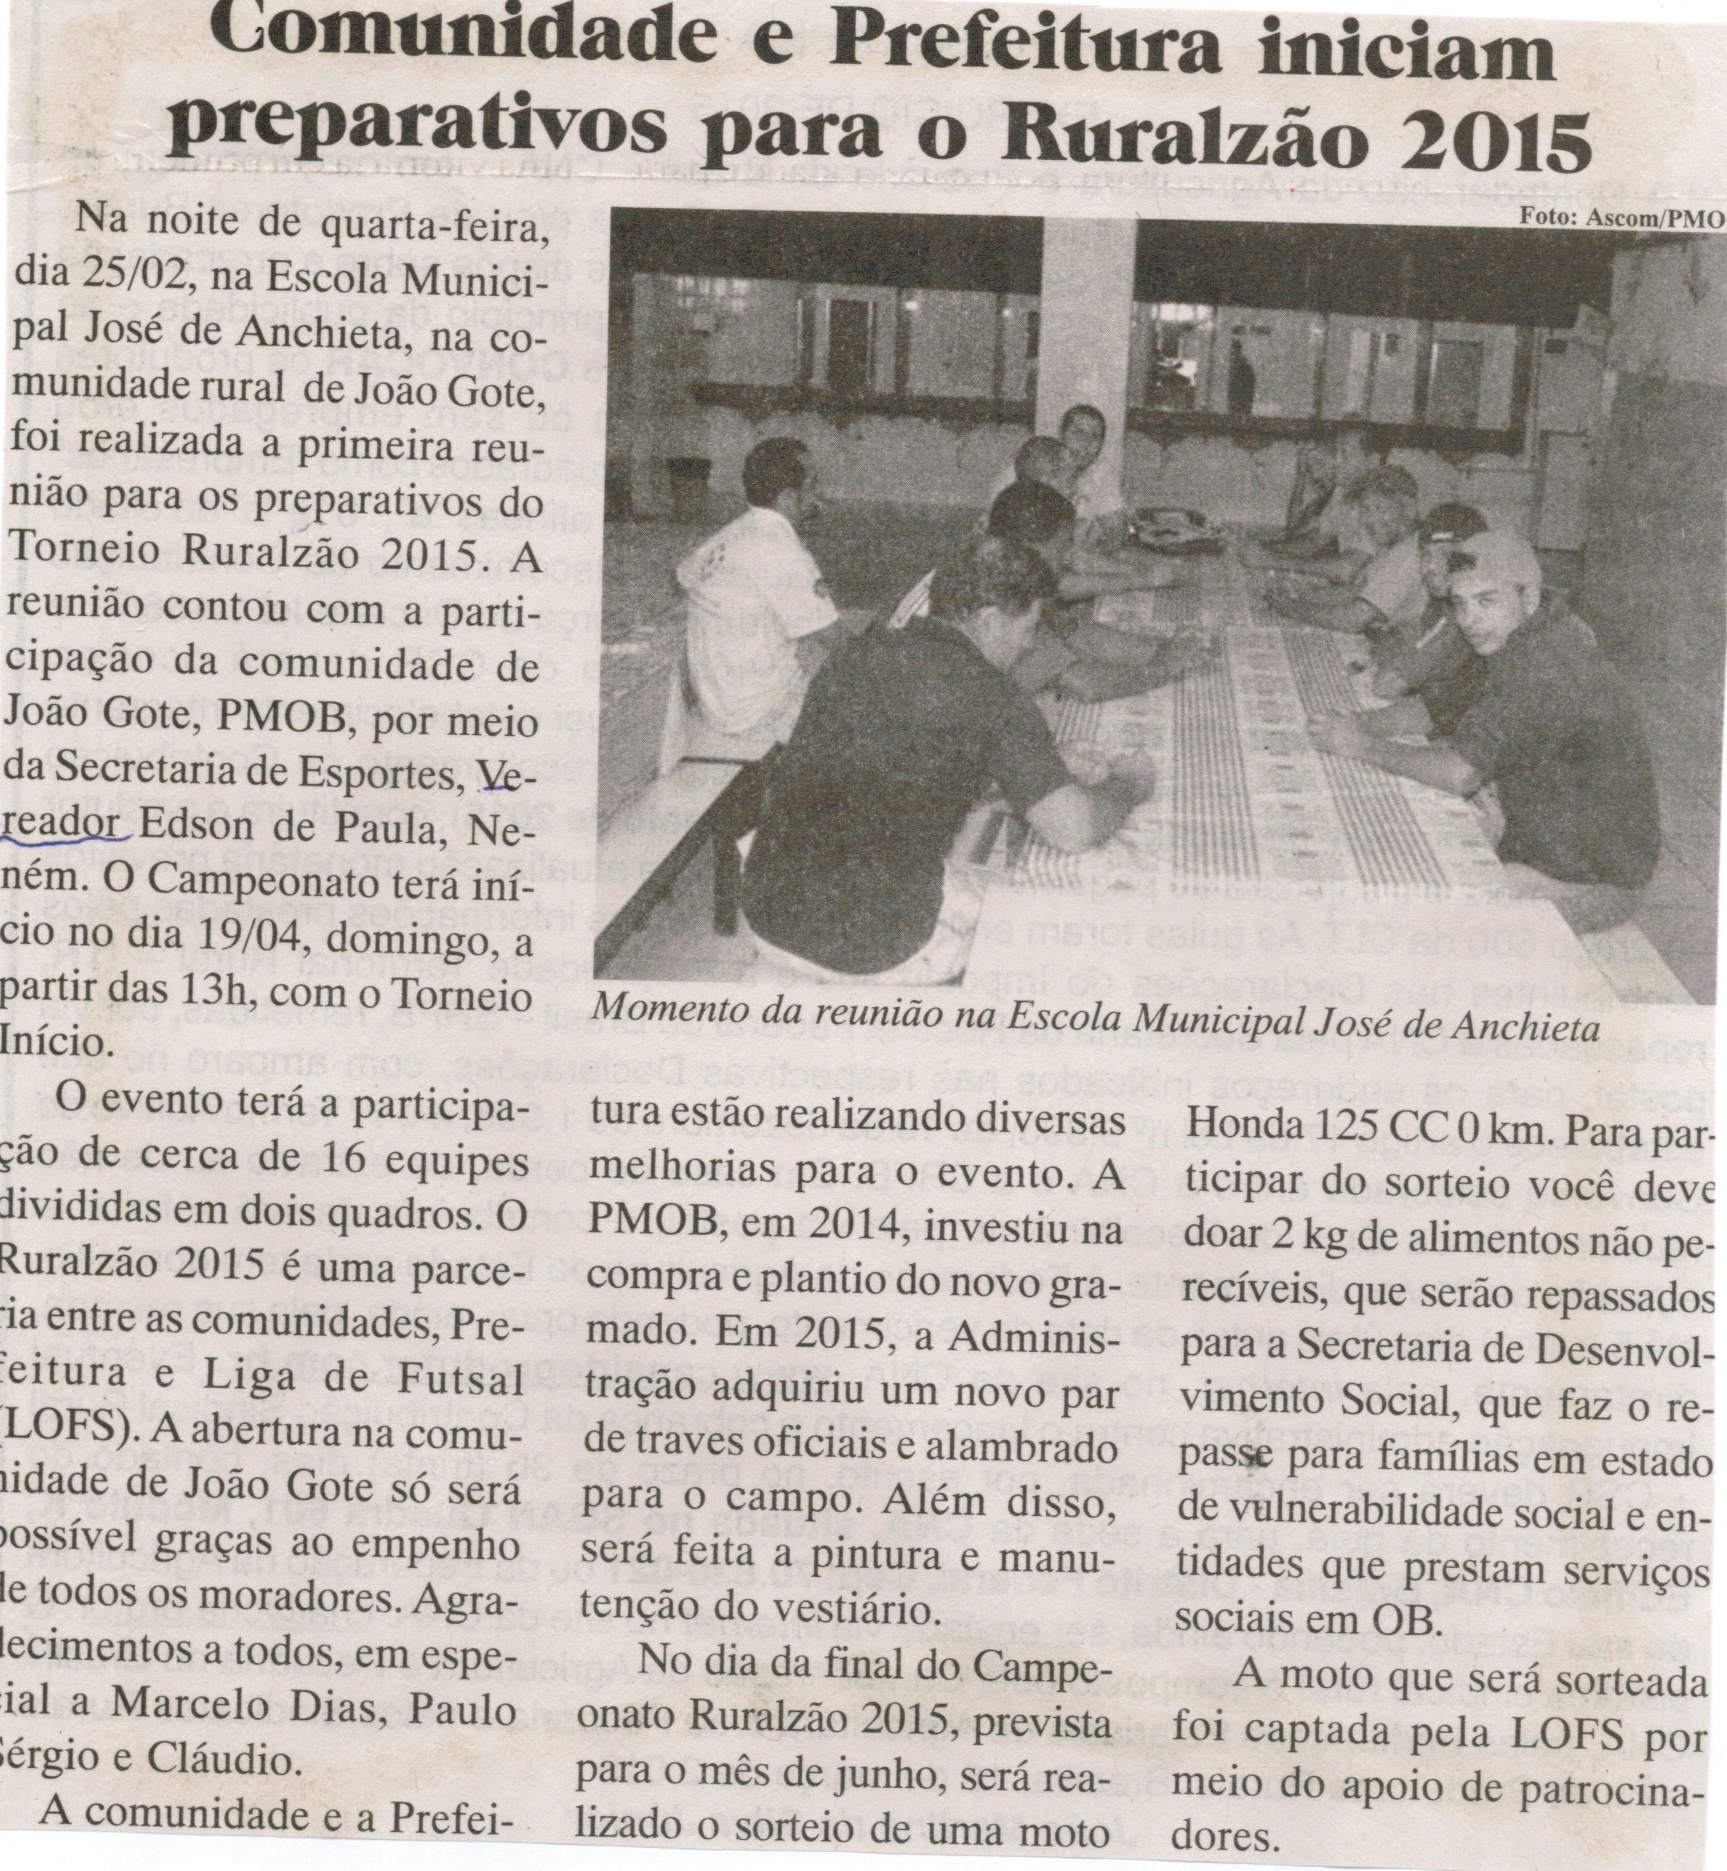 Comunidade e Prefeitura iniciam preparativos para o Ruralzão 2015. Jornal Baruc, Congonhas, 15 mar. 2015, p. 07.